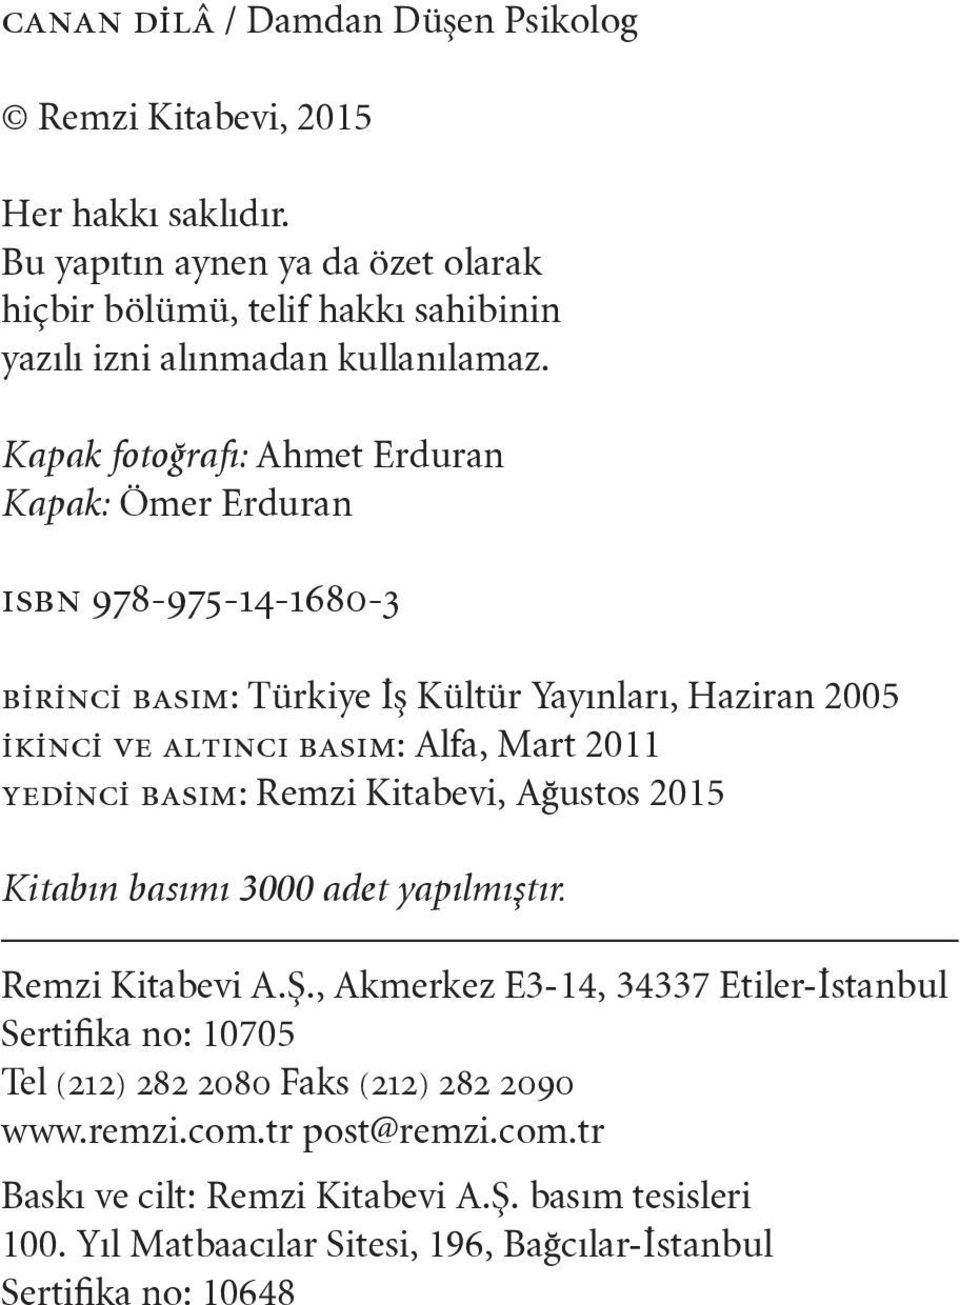 Kapak fotoğrafı: Ahmet Erduran Kapak: Ömer Erduran ısbn 978-975-14-1680-3 birinci basım: Türkiye İş Kültür Yayınları, Haziran 2005 ikinci ve altıncı basım: Alfa, Mart 2011 yedinci basım: